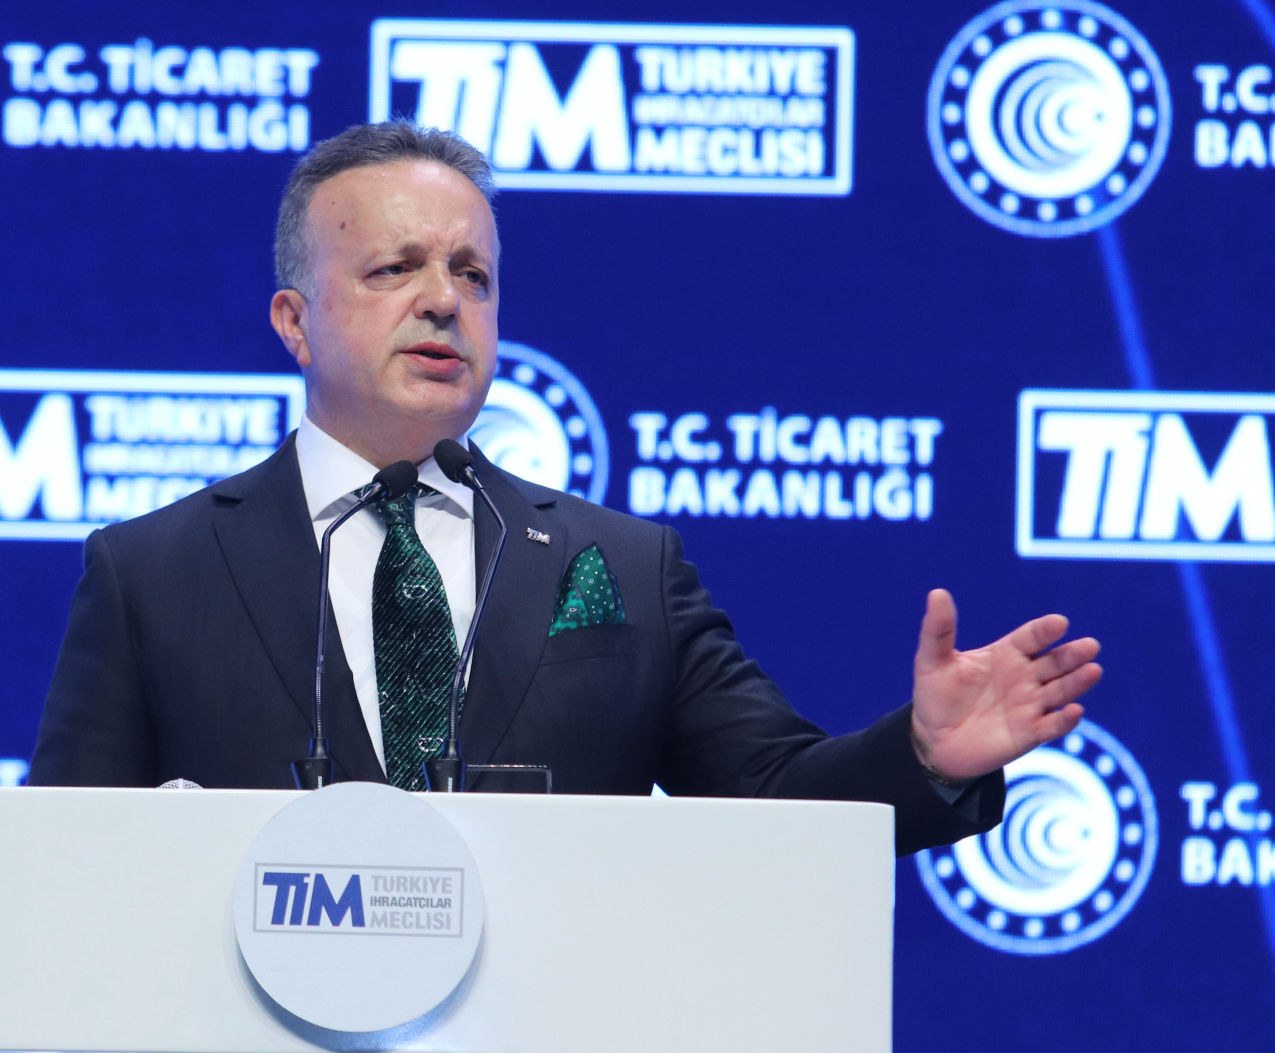 TİM Başkanı Gülle: Türkiye'nin yeşil ekonomik dönüşümünde öncü olacağız